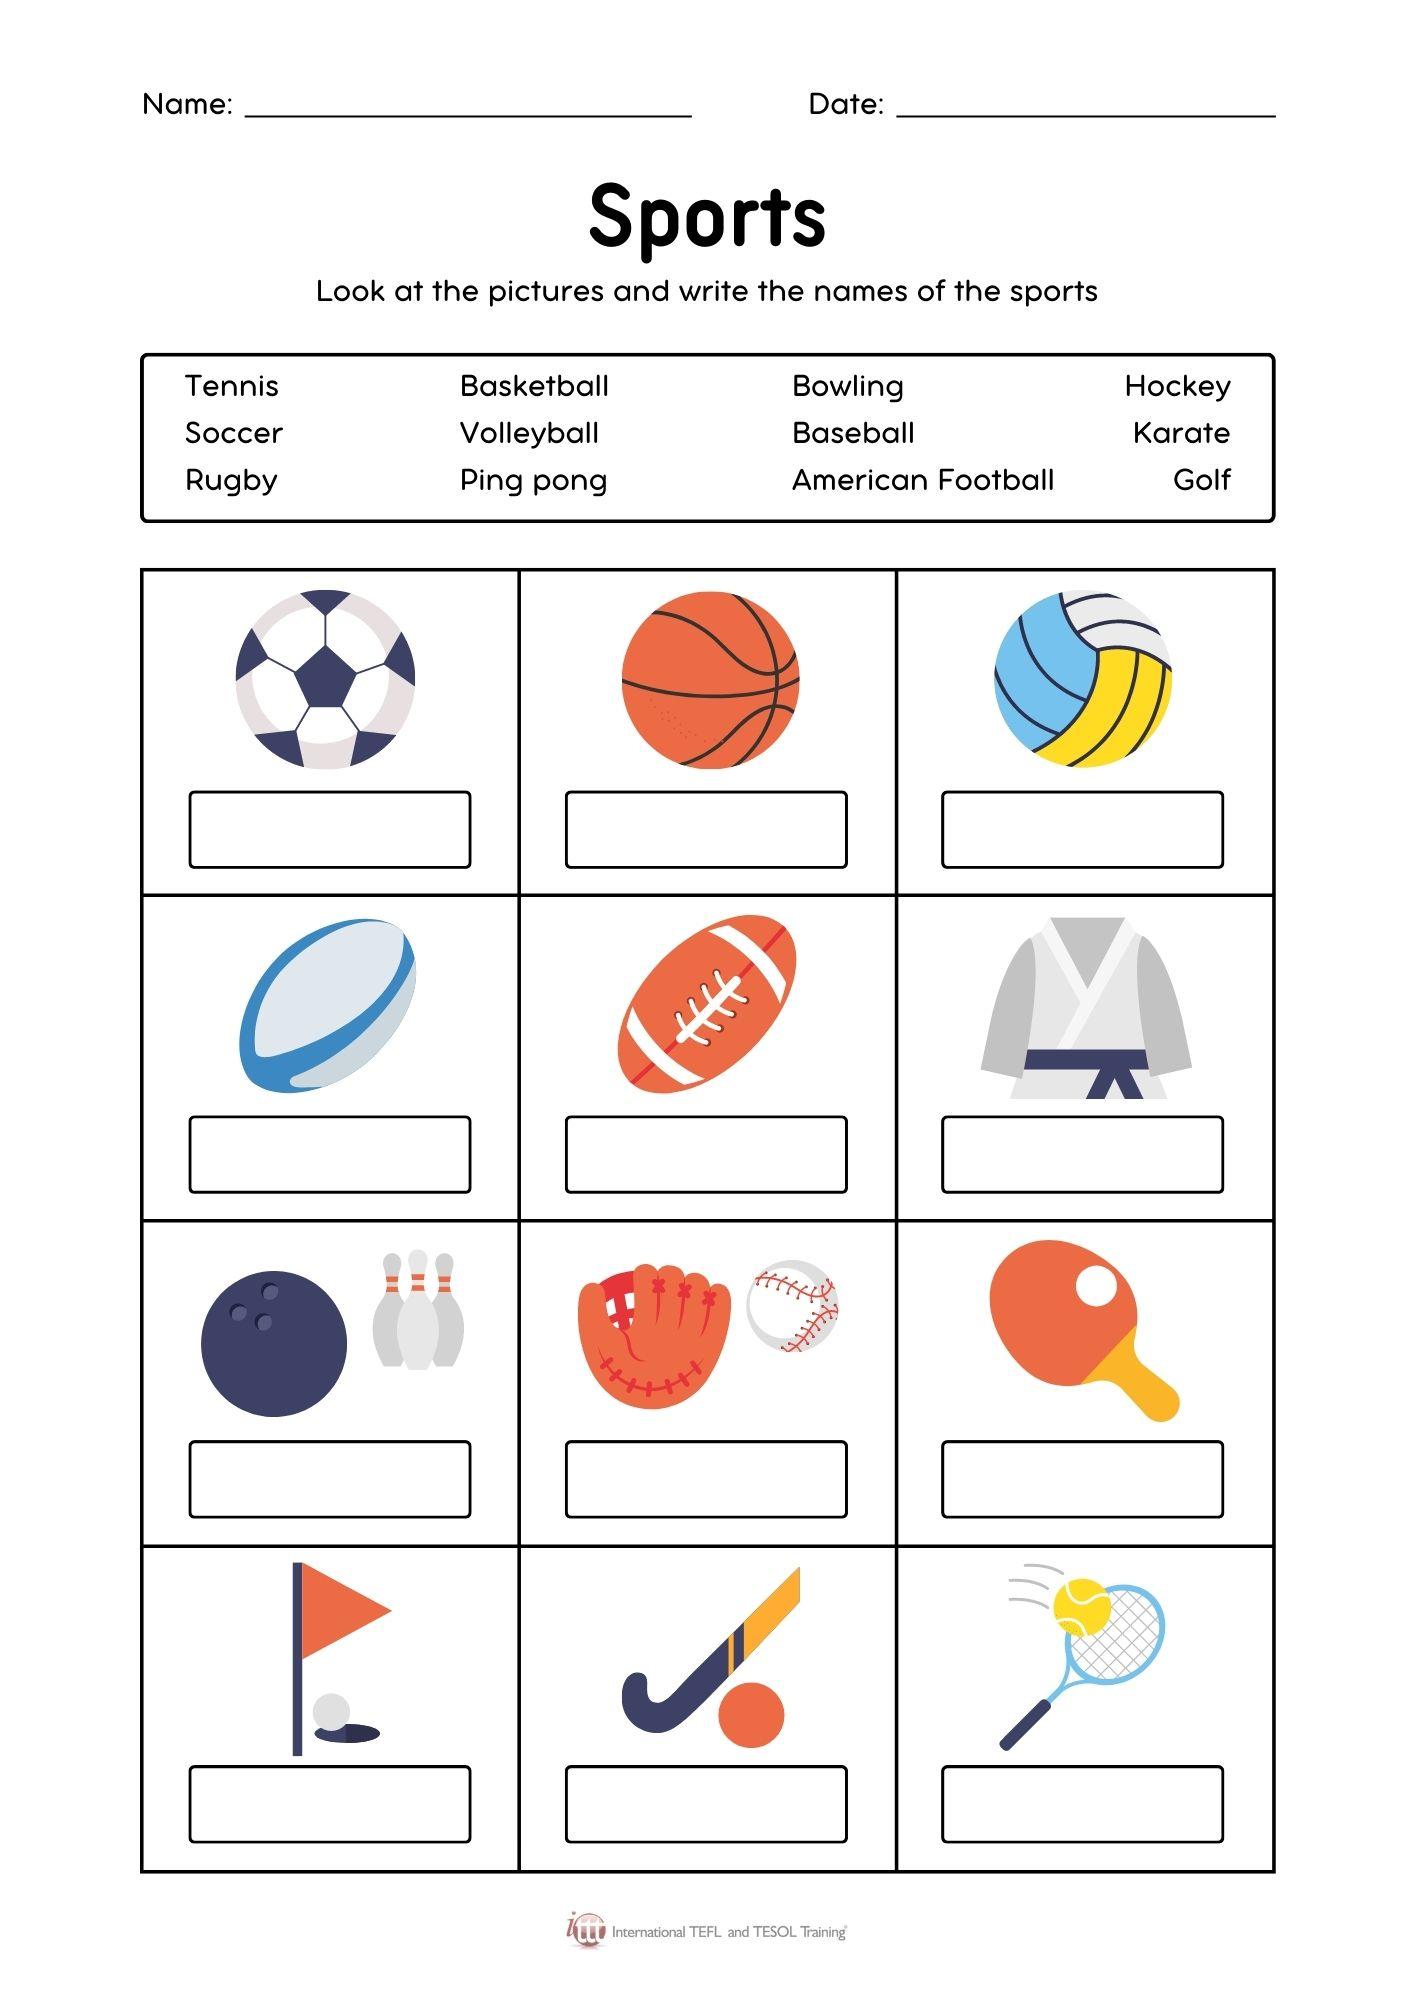 Grammar corner Sports Match Worksheet